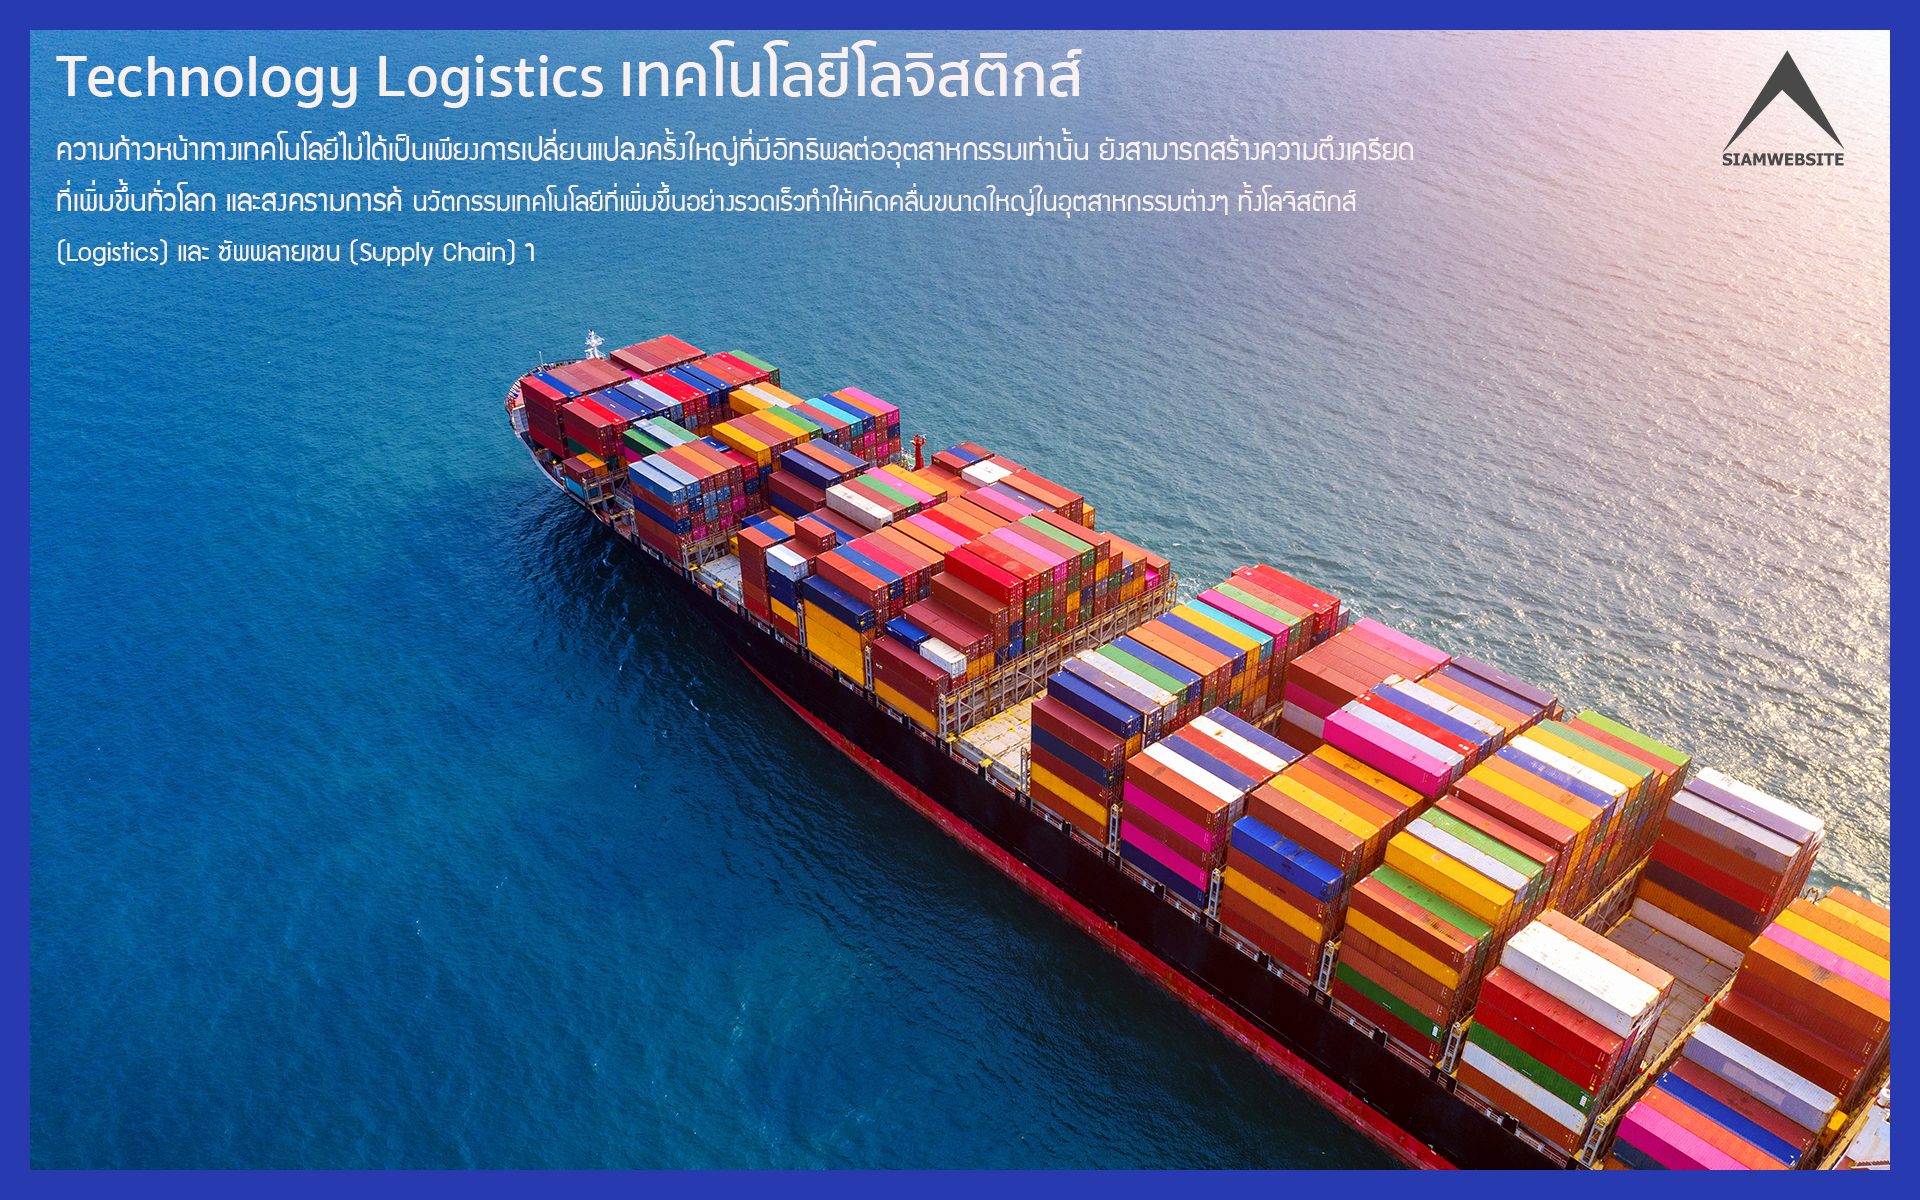 รับทําเว็บไซต์ เว็บขยายสายงาน Technology Logistics เทคโนโลยีโลจิสติกส์ | TTT-WEBSITE 